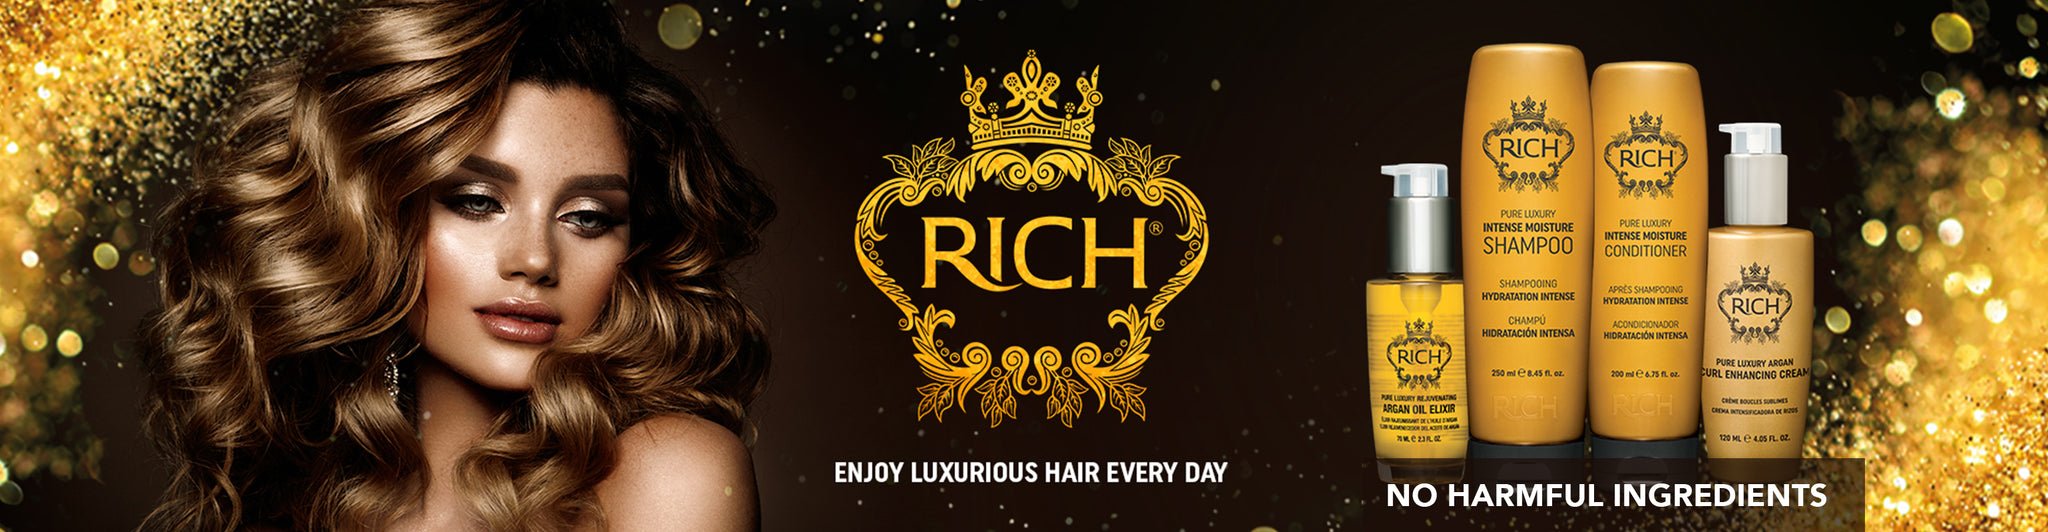 rich hair banner